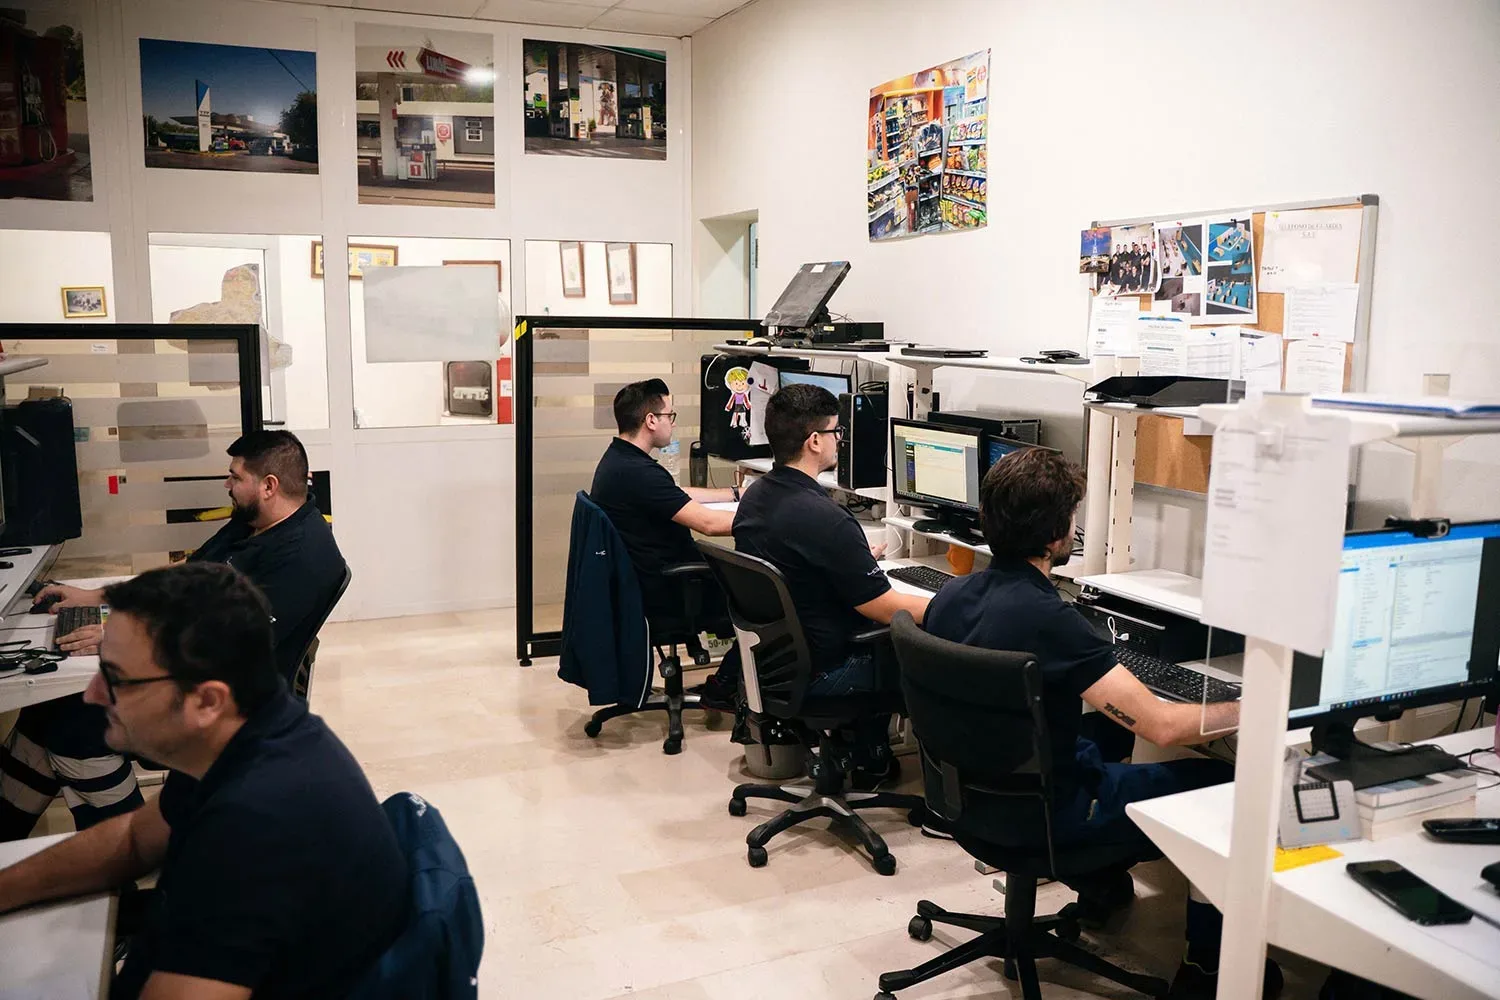 La plantilla de 4GL está compuesta por medio centenar de empleados organizados en diferentes departamentos ubicados en nuestra sede principal de Murcia.